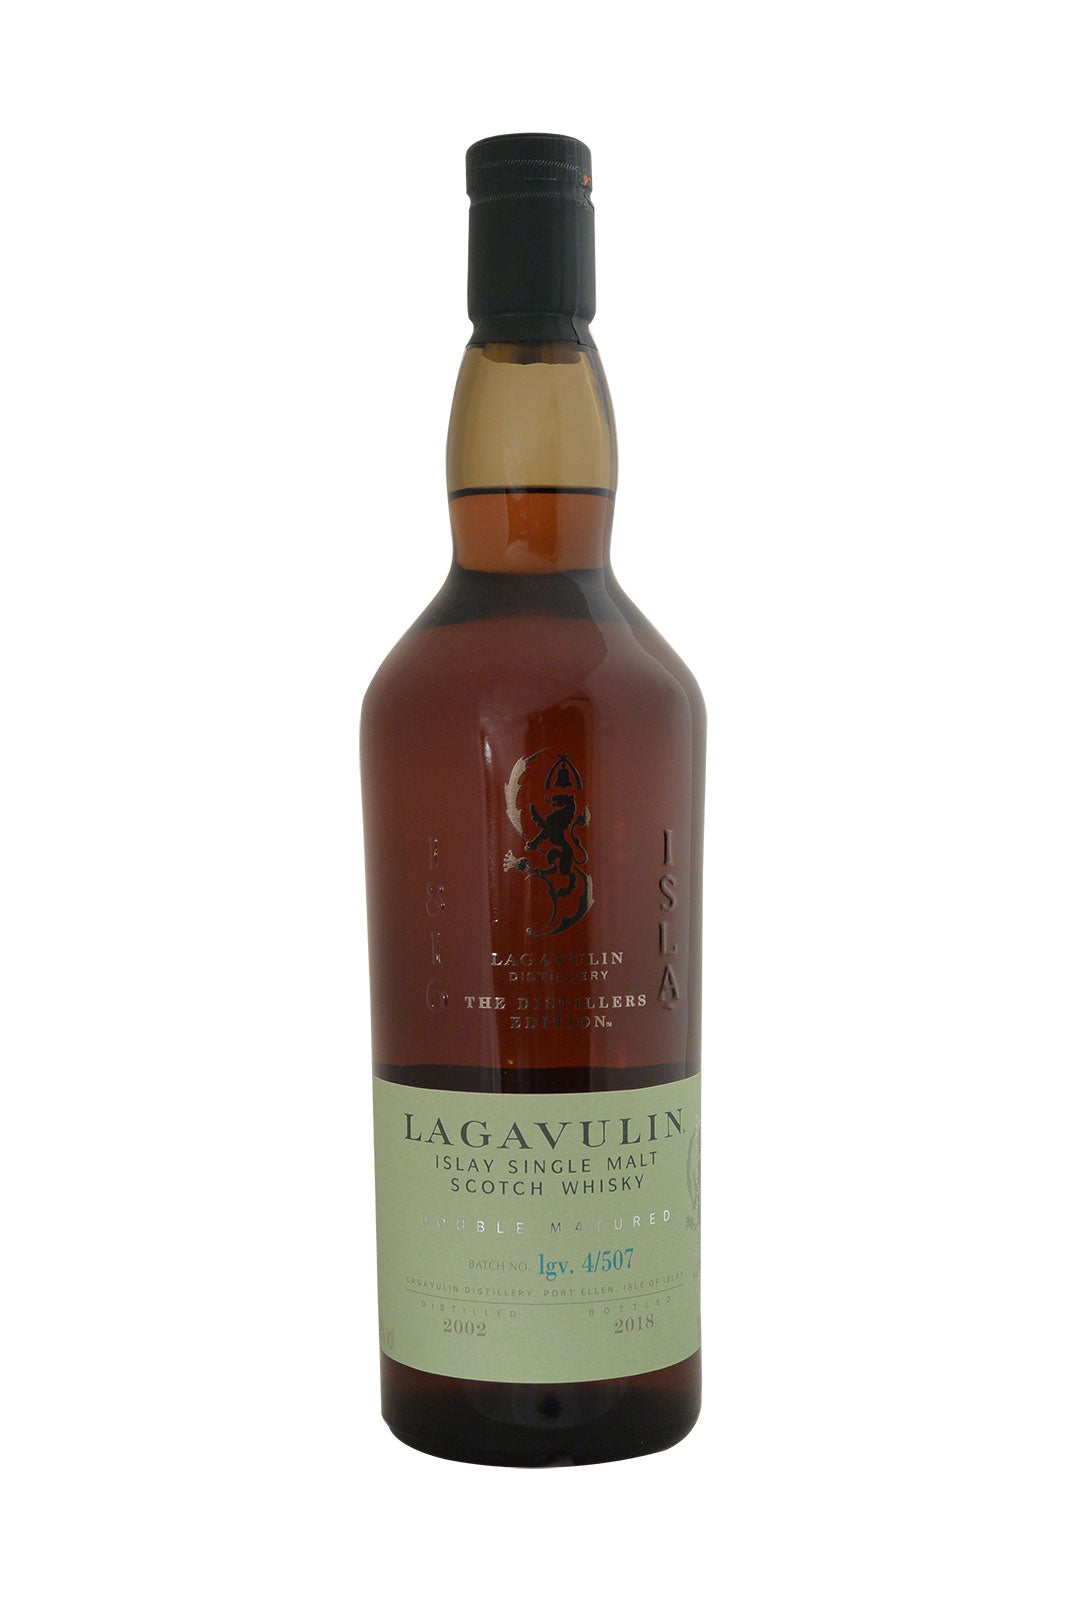 Lagavullin Distillers Double Matured Edition 4/507